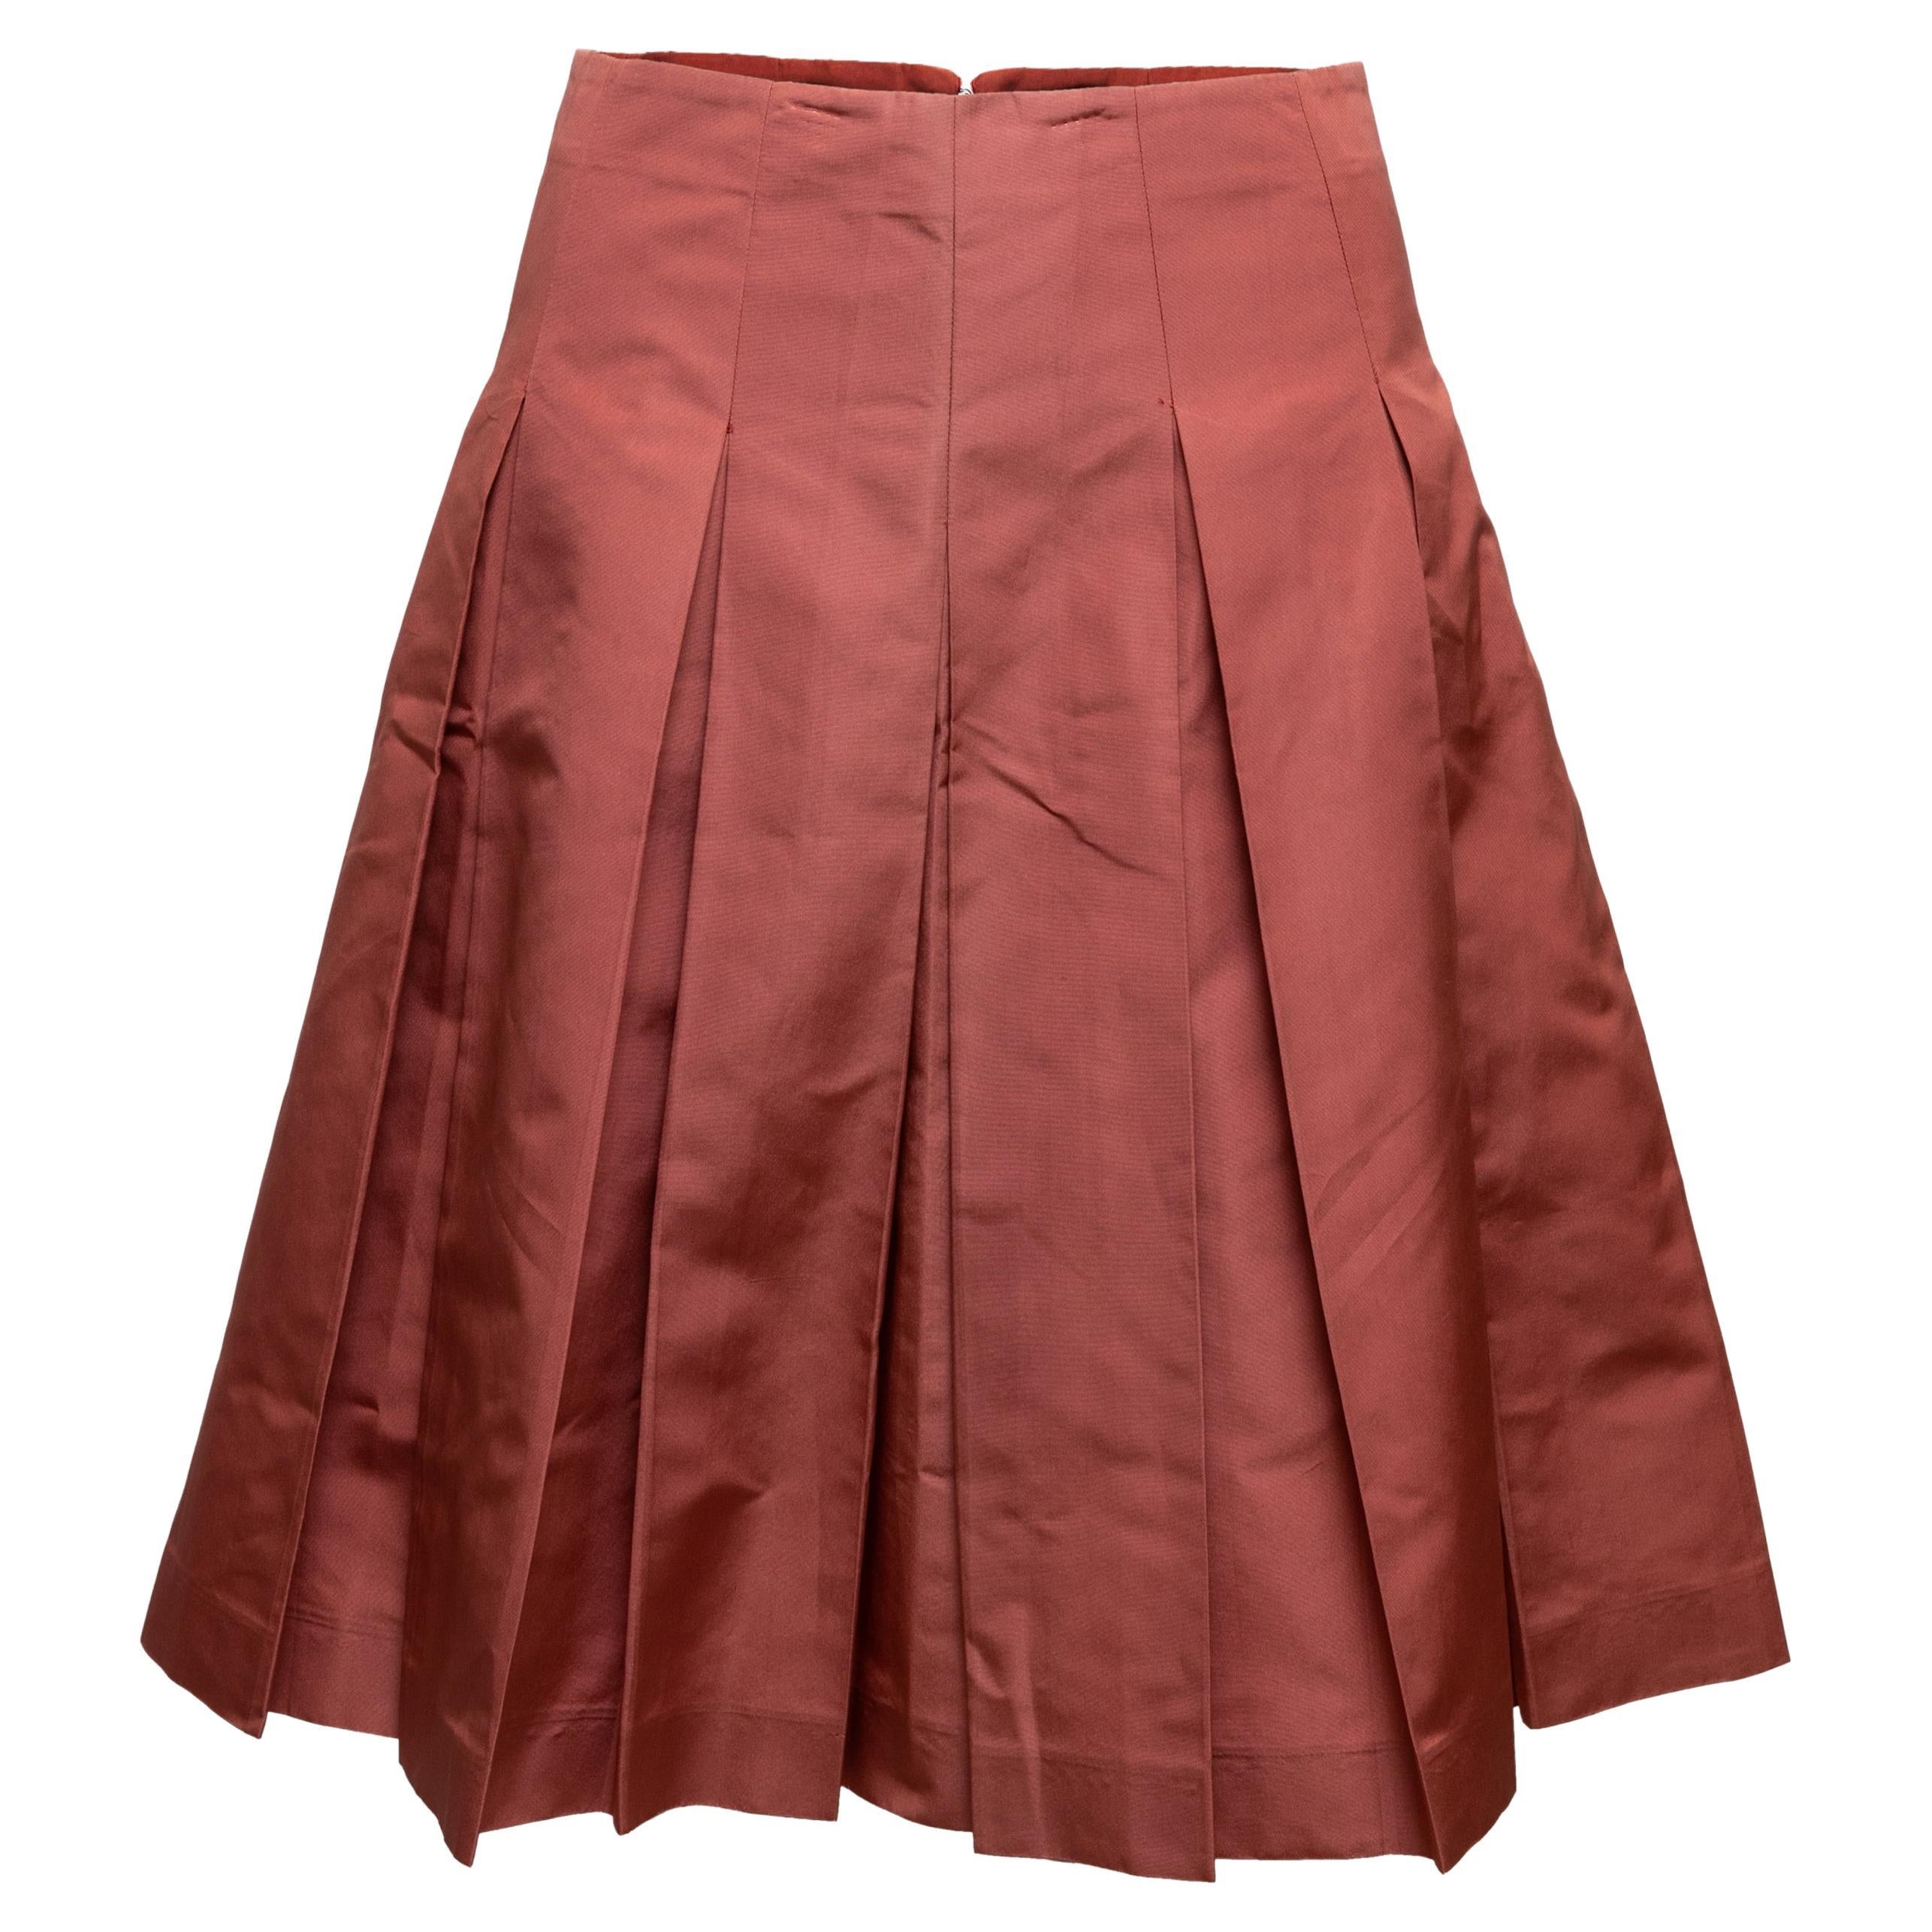 Prada jupe plissée couleur saumon, taille IT 38